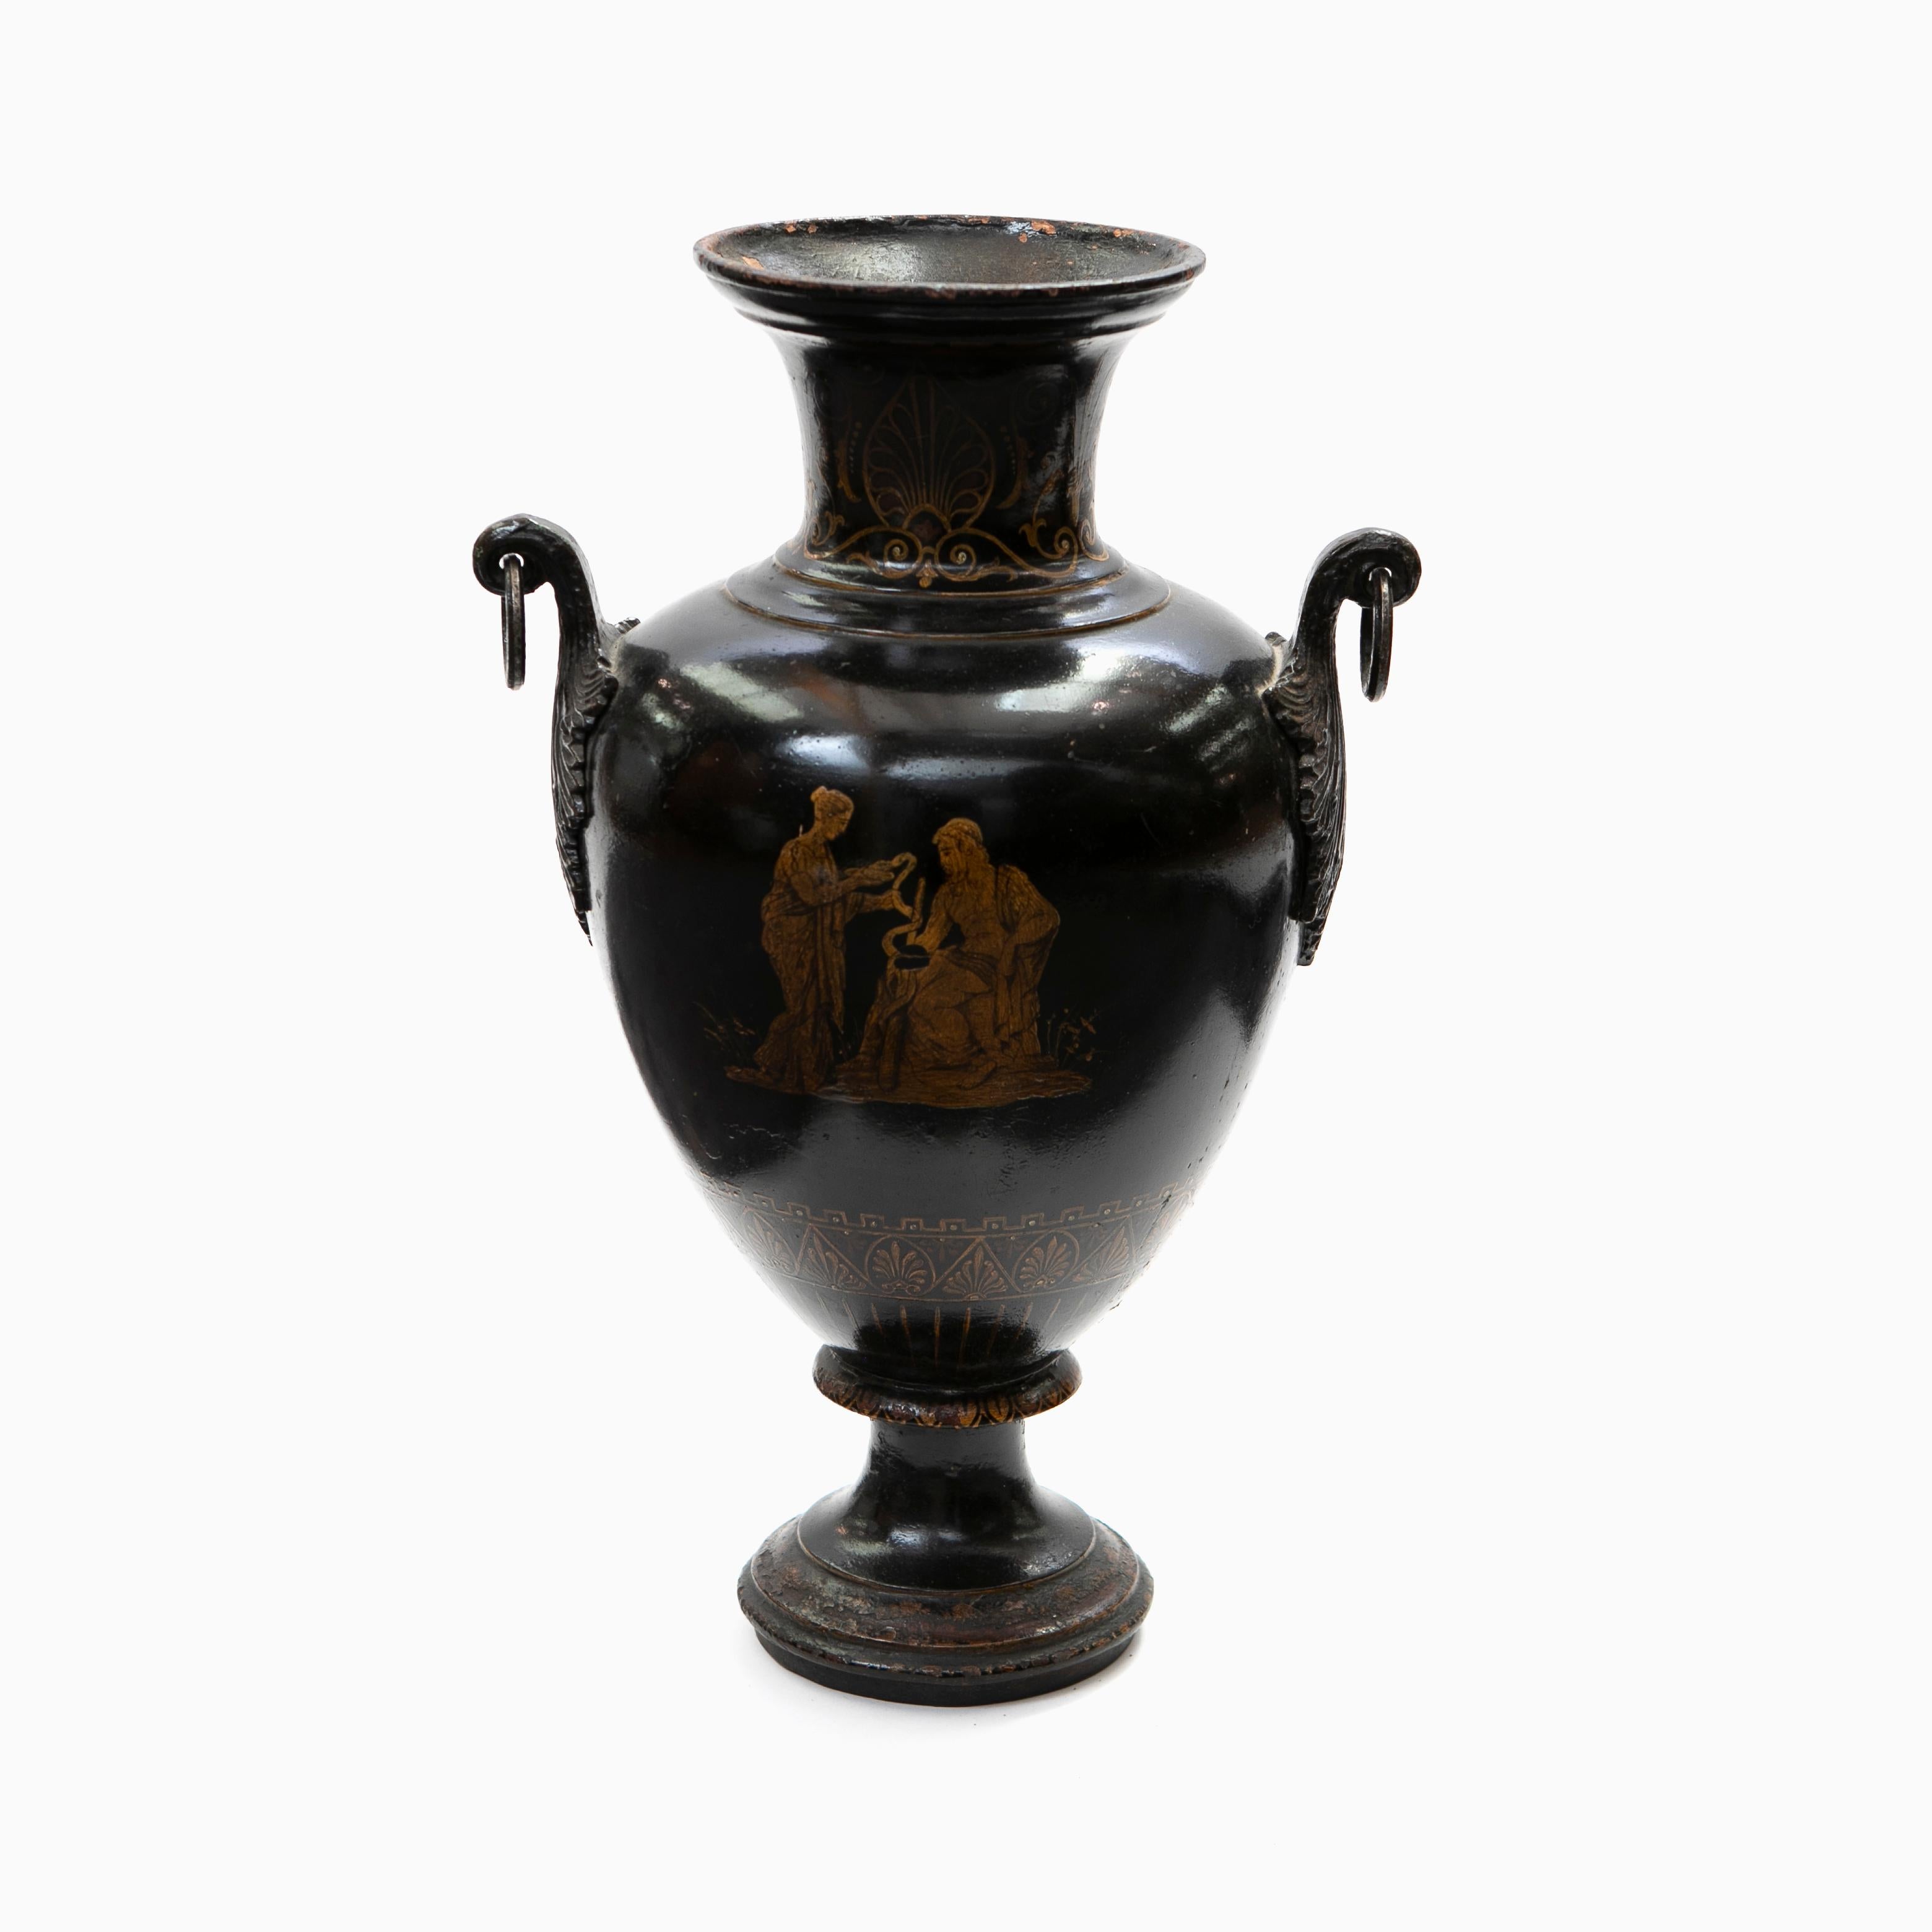 Dekorative Amphora mit Griffen im Stil der griechischen Klassik.
Die Vase ist aus schwarz lackiertem Gusseisen mit gelben Verzierungen, eine Seite zeigt eine klassische griechische Szene mit Paar.
Ursprünglicher Zustand.

Dänemark, um 1840.